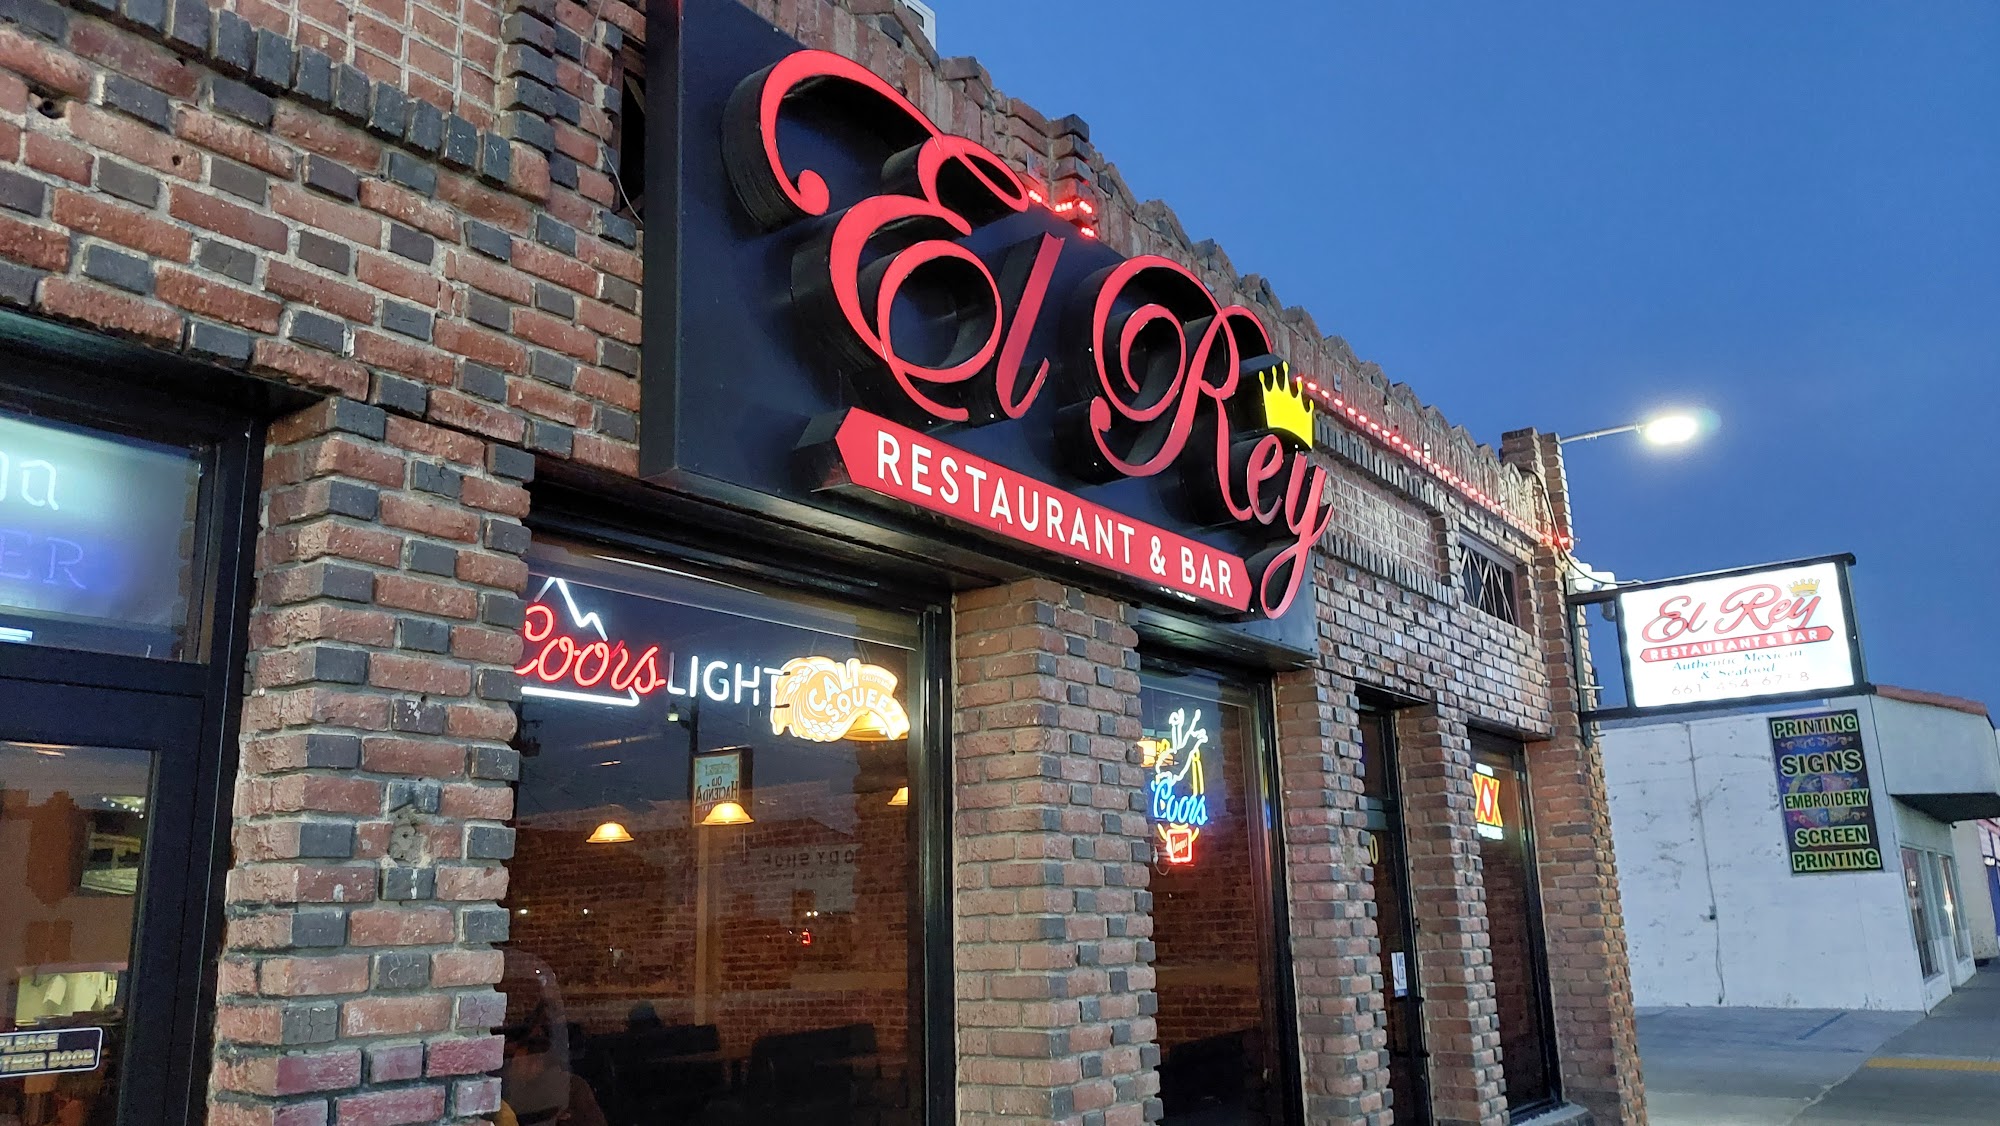 El Rey Restaurant and Bar